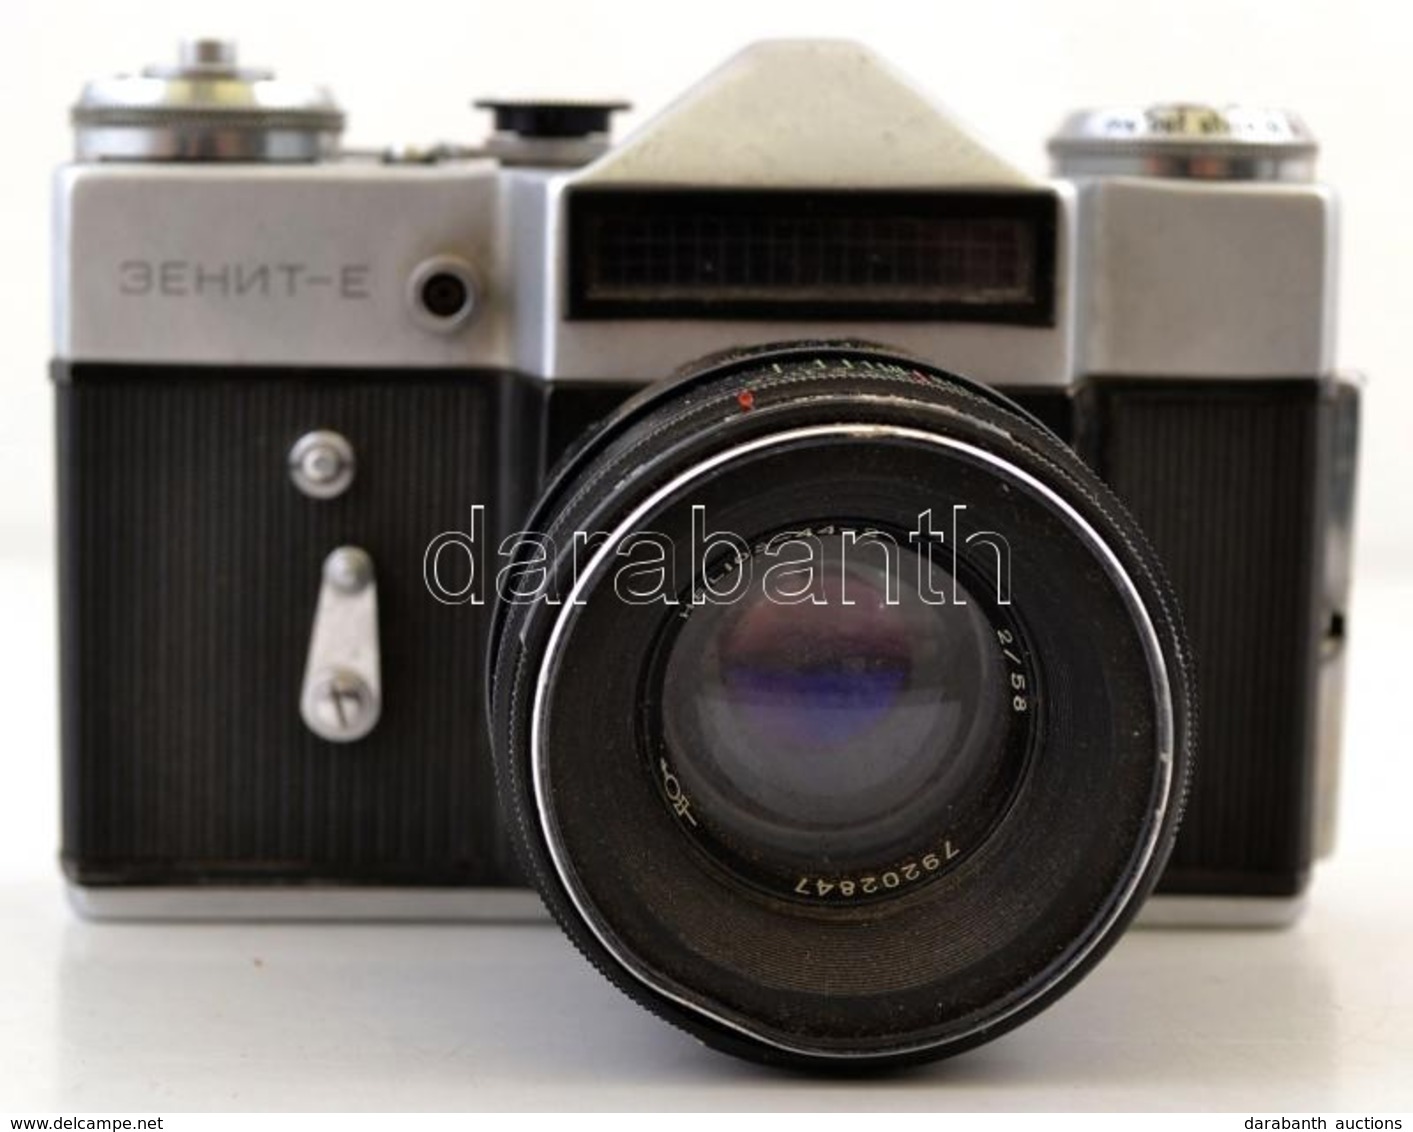 Zenit-E Fényképezőgép, Helios-44 2/58 Objektívvel, Eredeti Bőr Tokjában, Működőképes állapotban. /Vintage Russian Camera - Fotoapparate